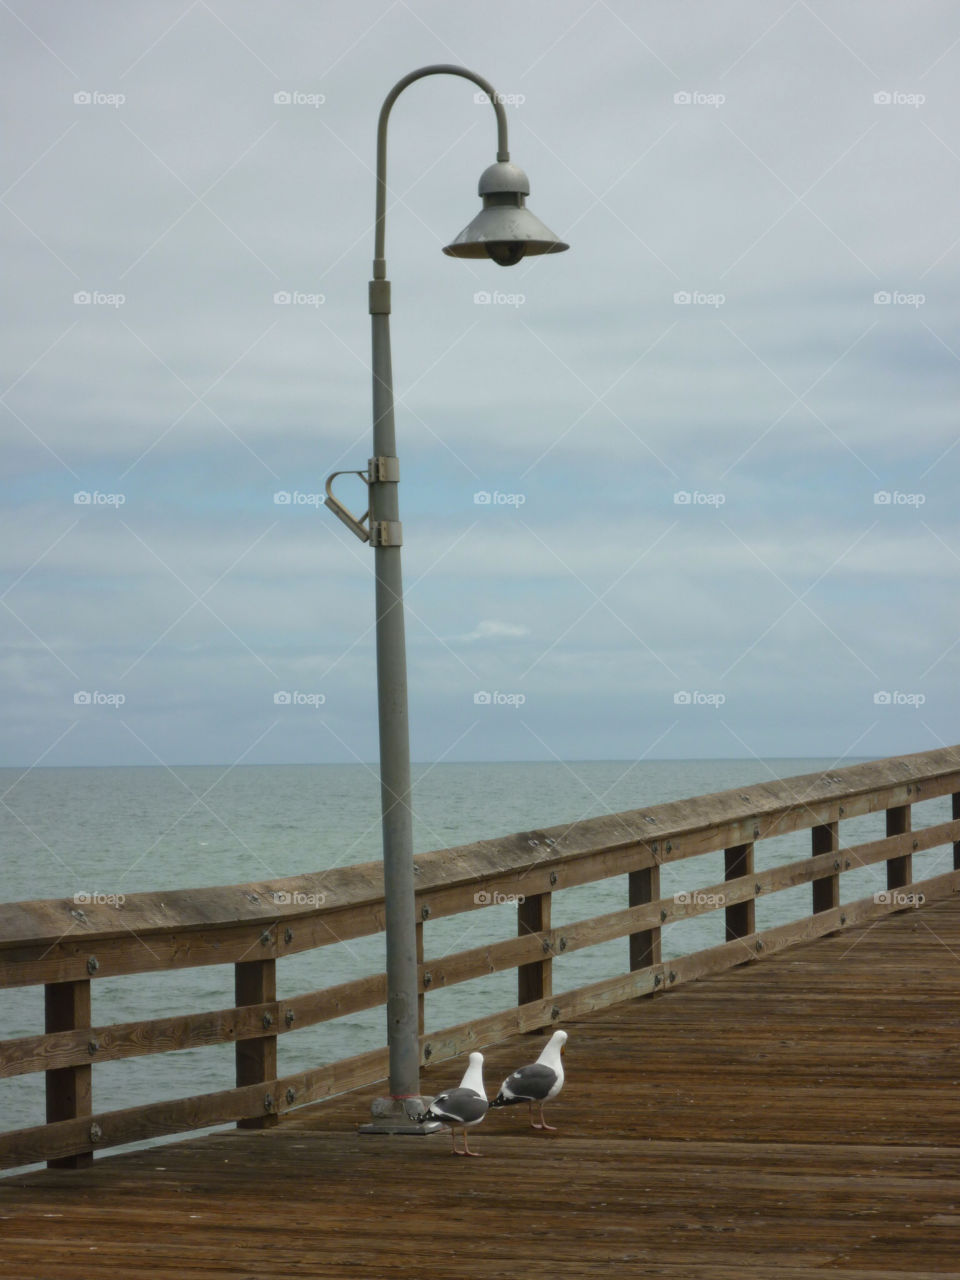 ocean clouds lamp pier by kenglund